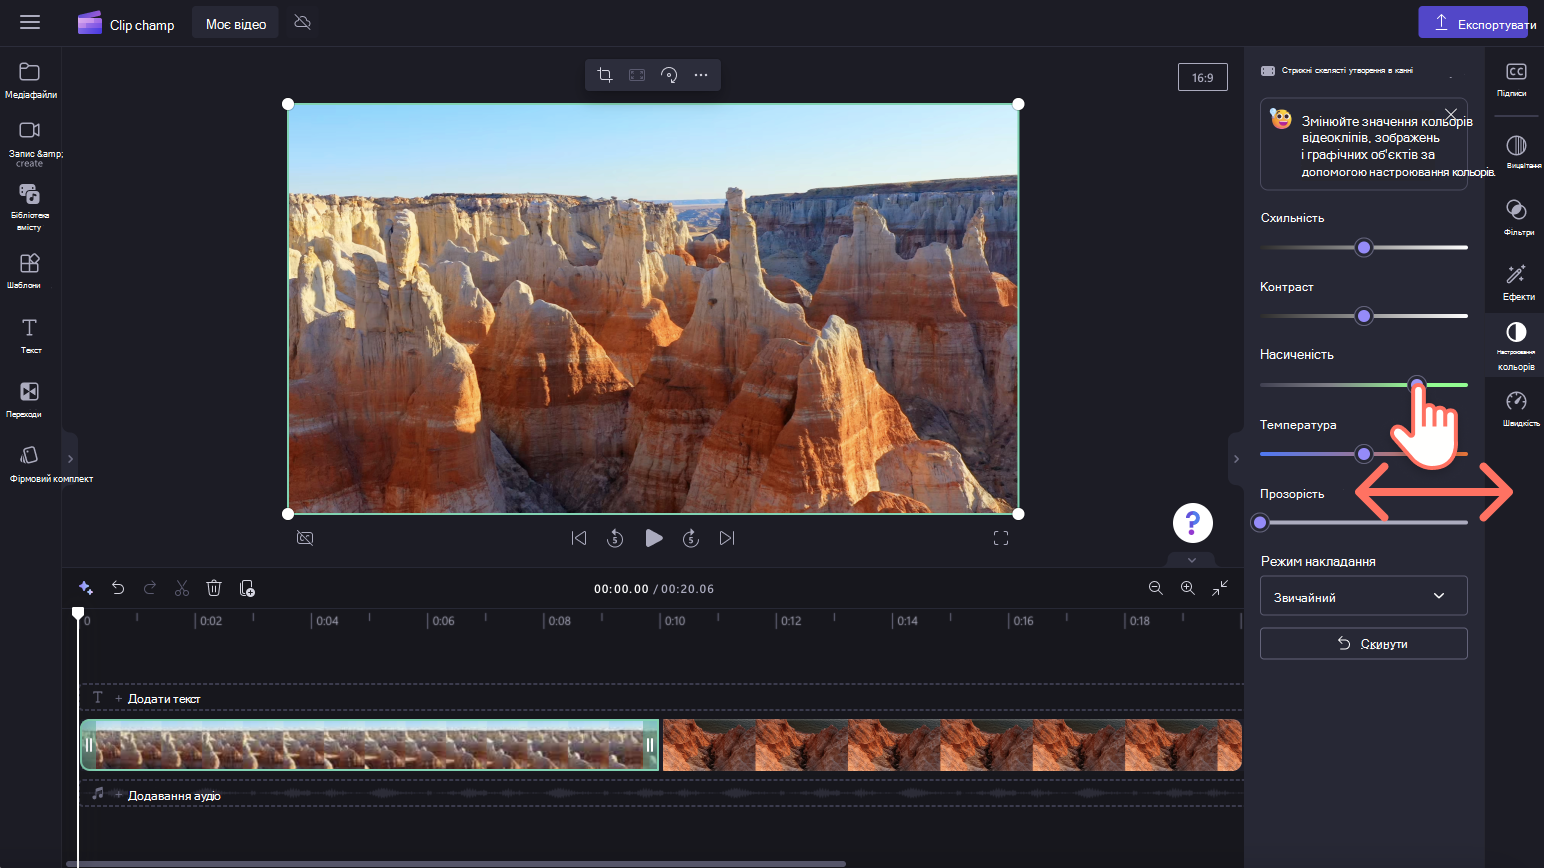 Зображення користувача, який редагує колір відео.